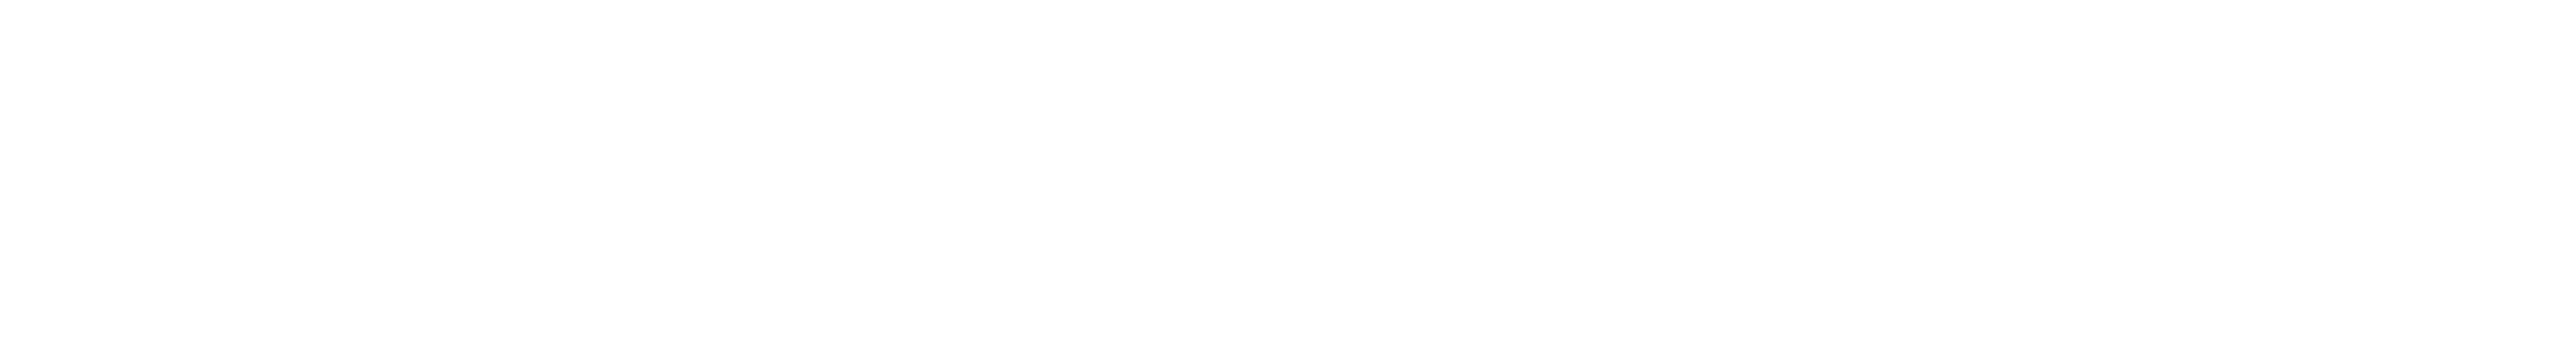 prr-republica-portuguesa-financiado-pela-uniao-europeia